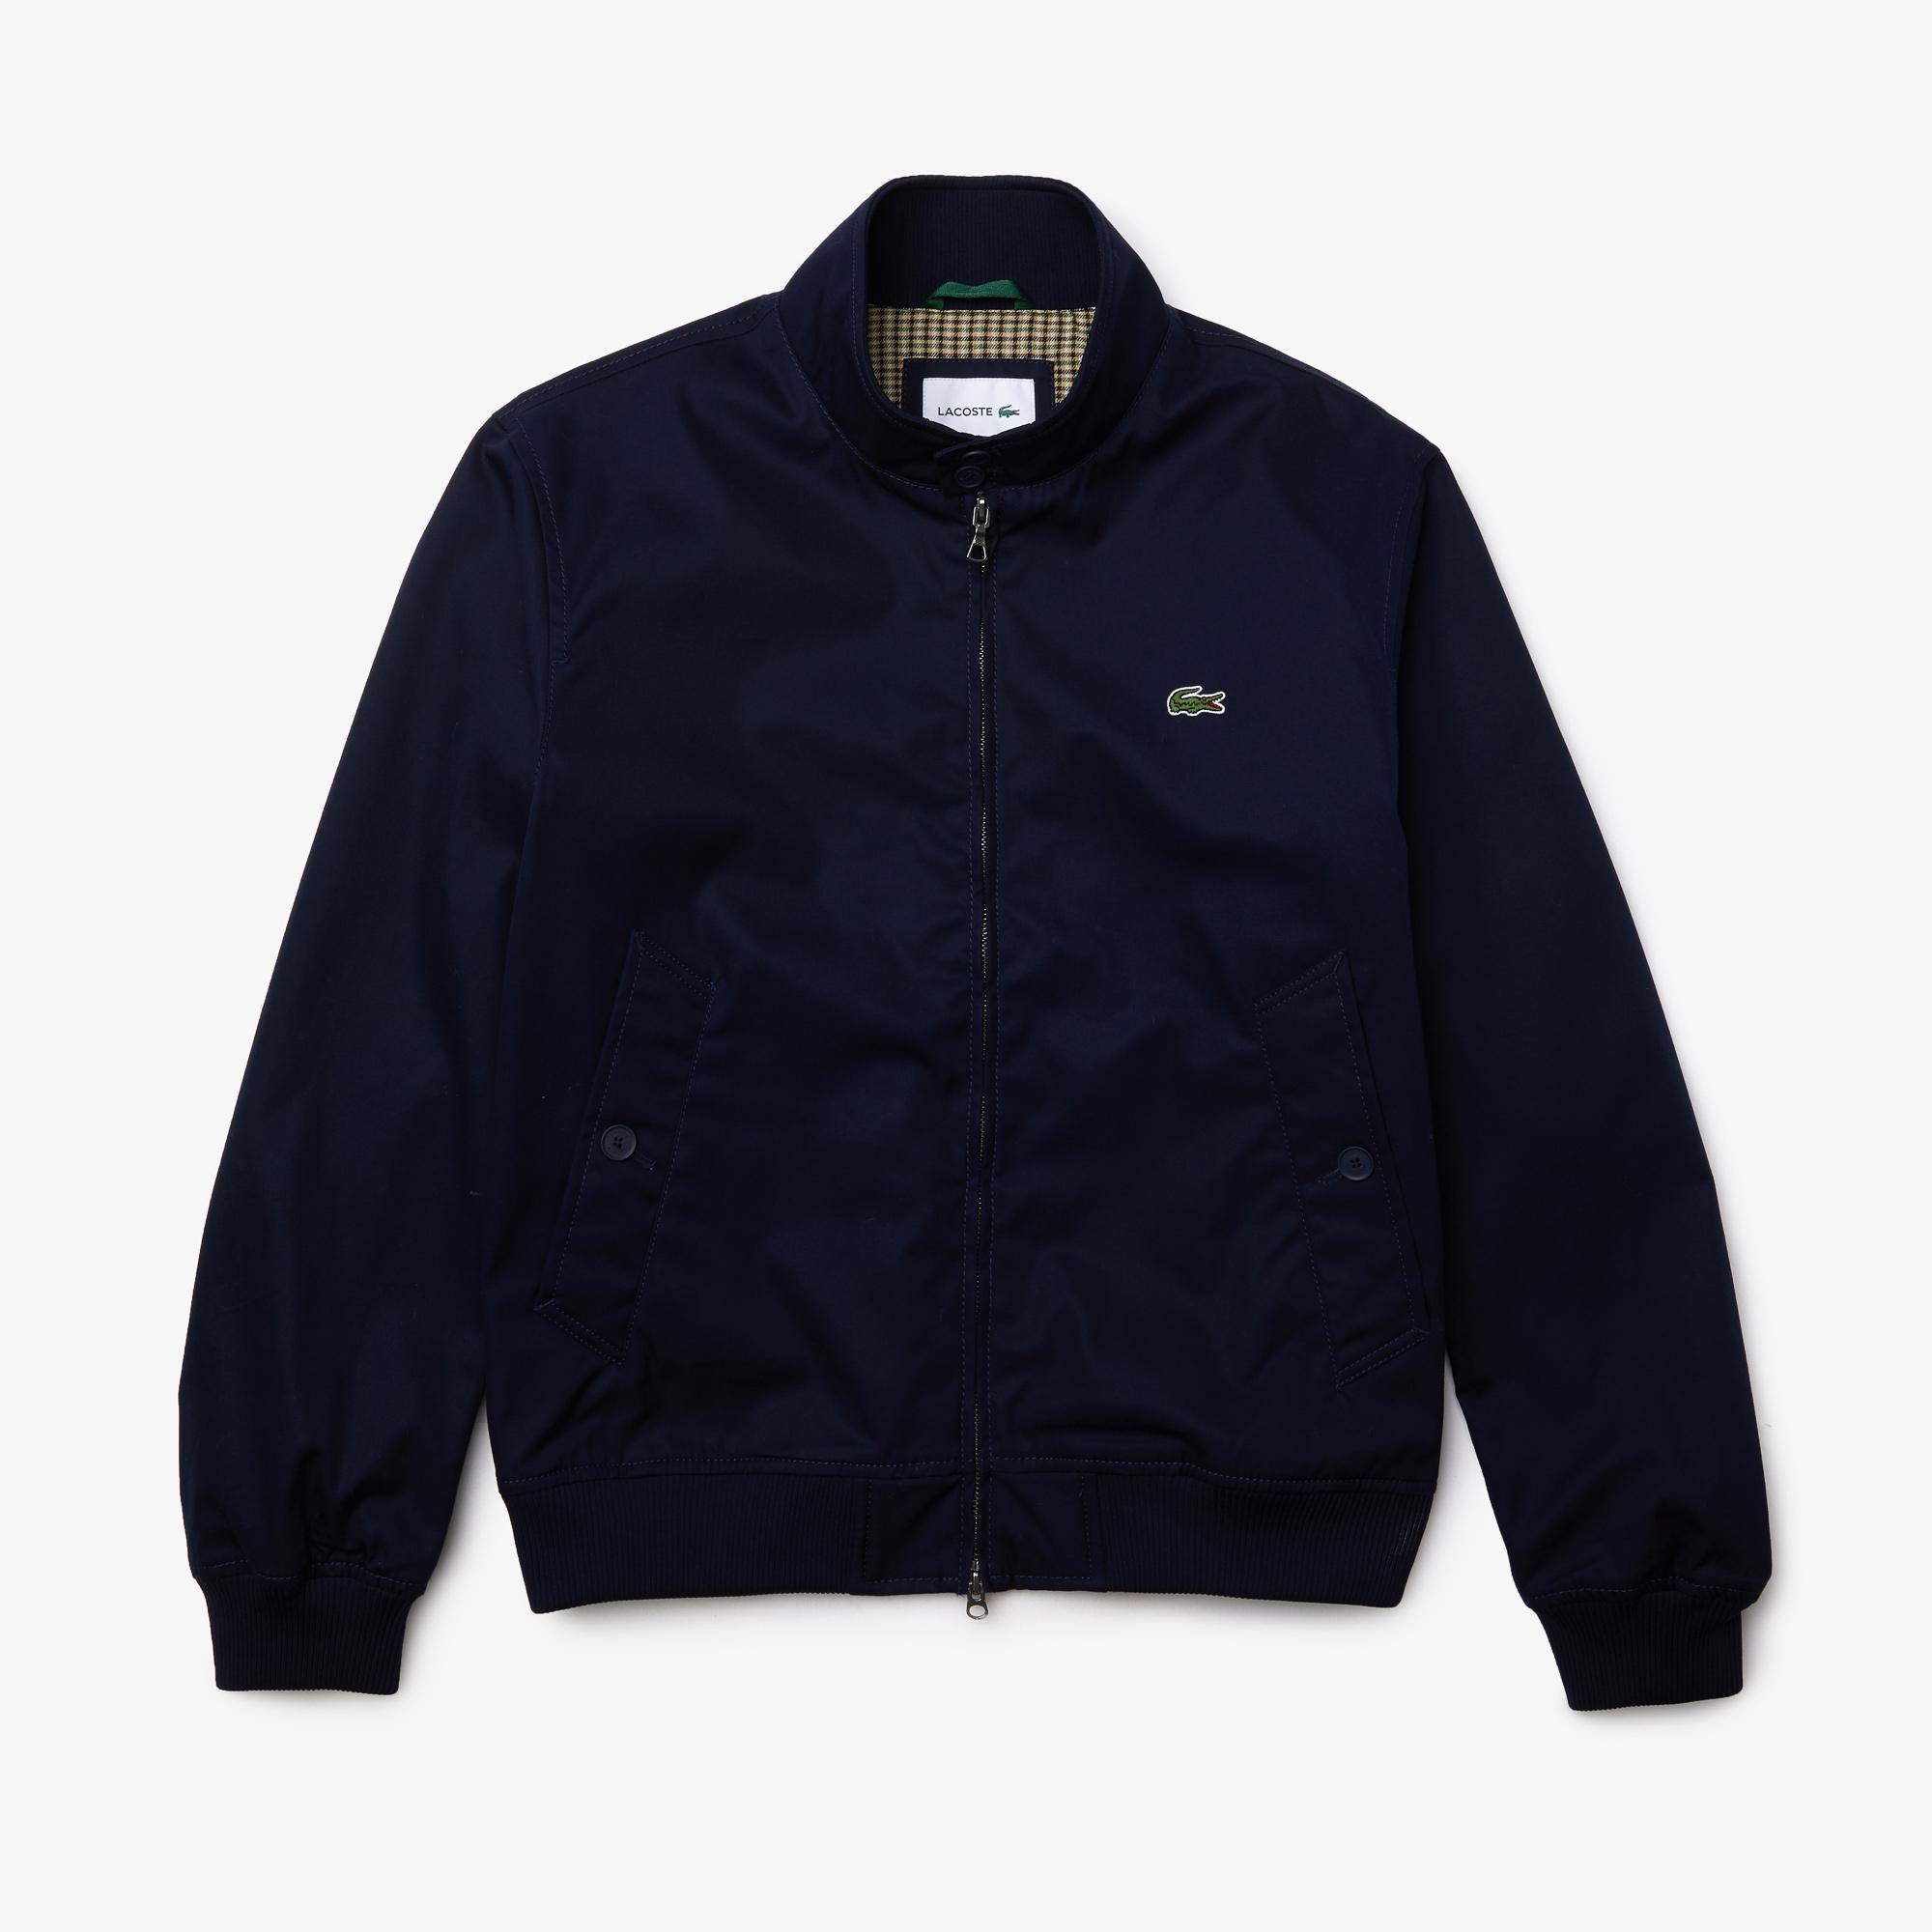 Lacoste Men’s Water-Resistant Cotton Zip Jacket